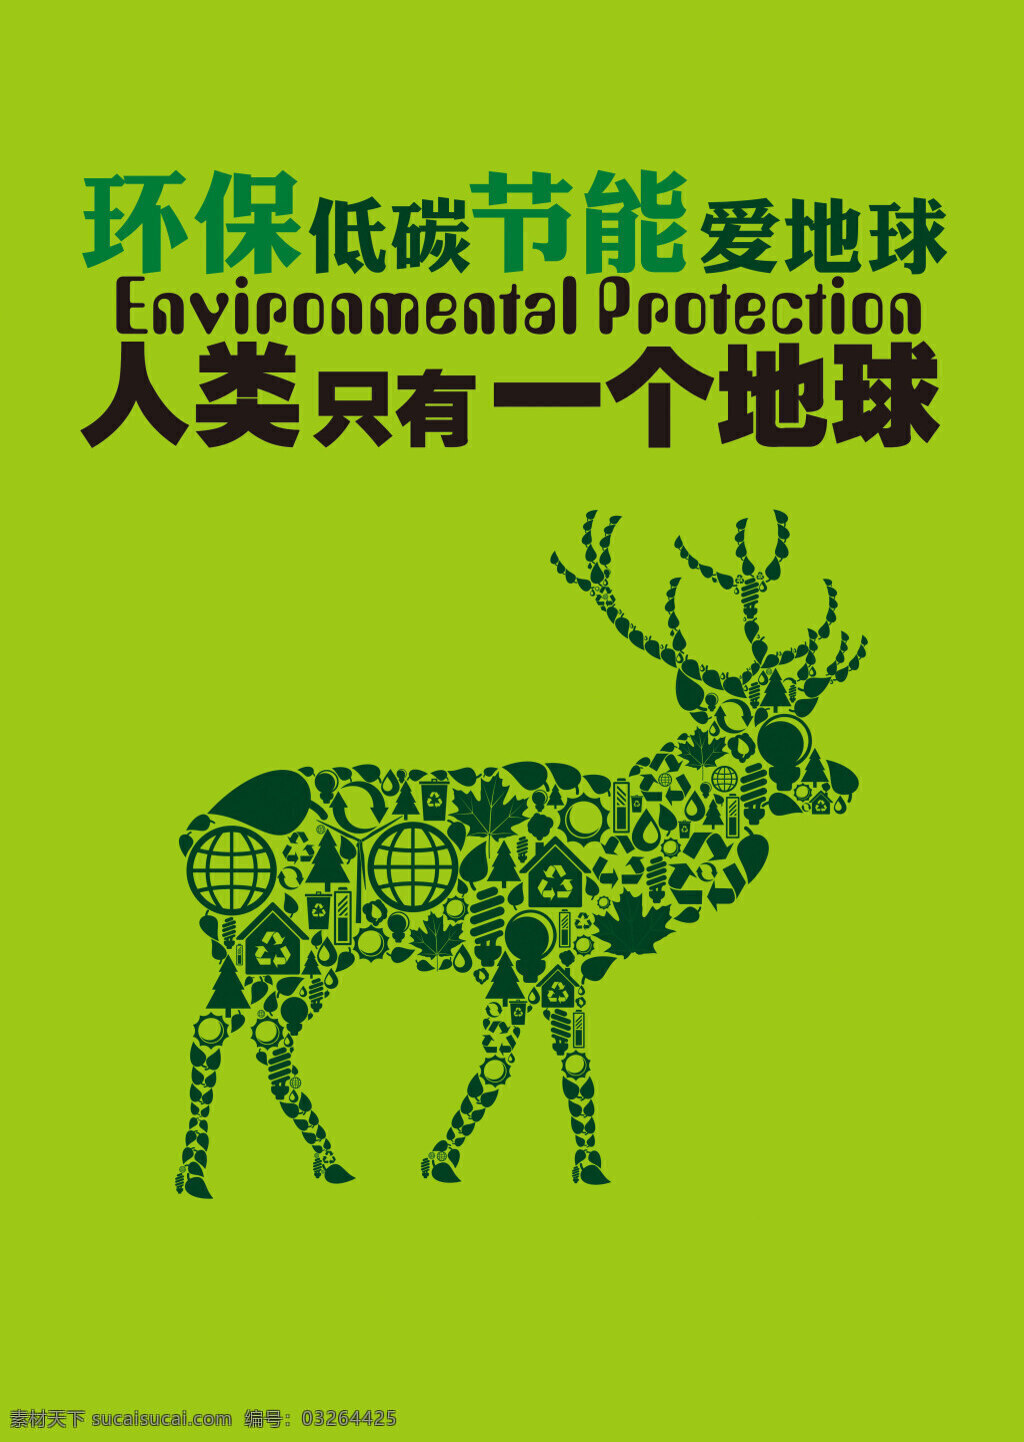 环保公益海报 环保图 海报 环保 低碳 节能 爱地球 一个地球 环保鹿 绿色 矢量 公益广告 平面设计